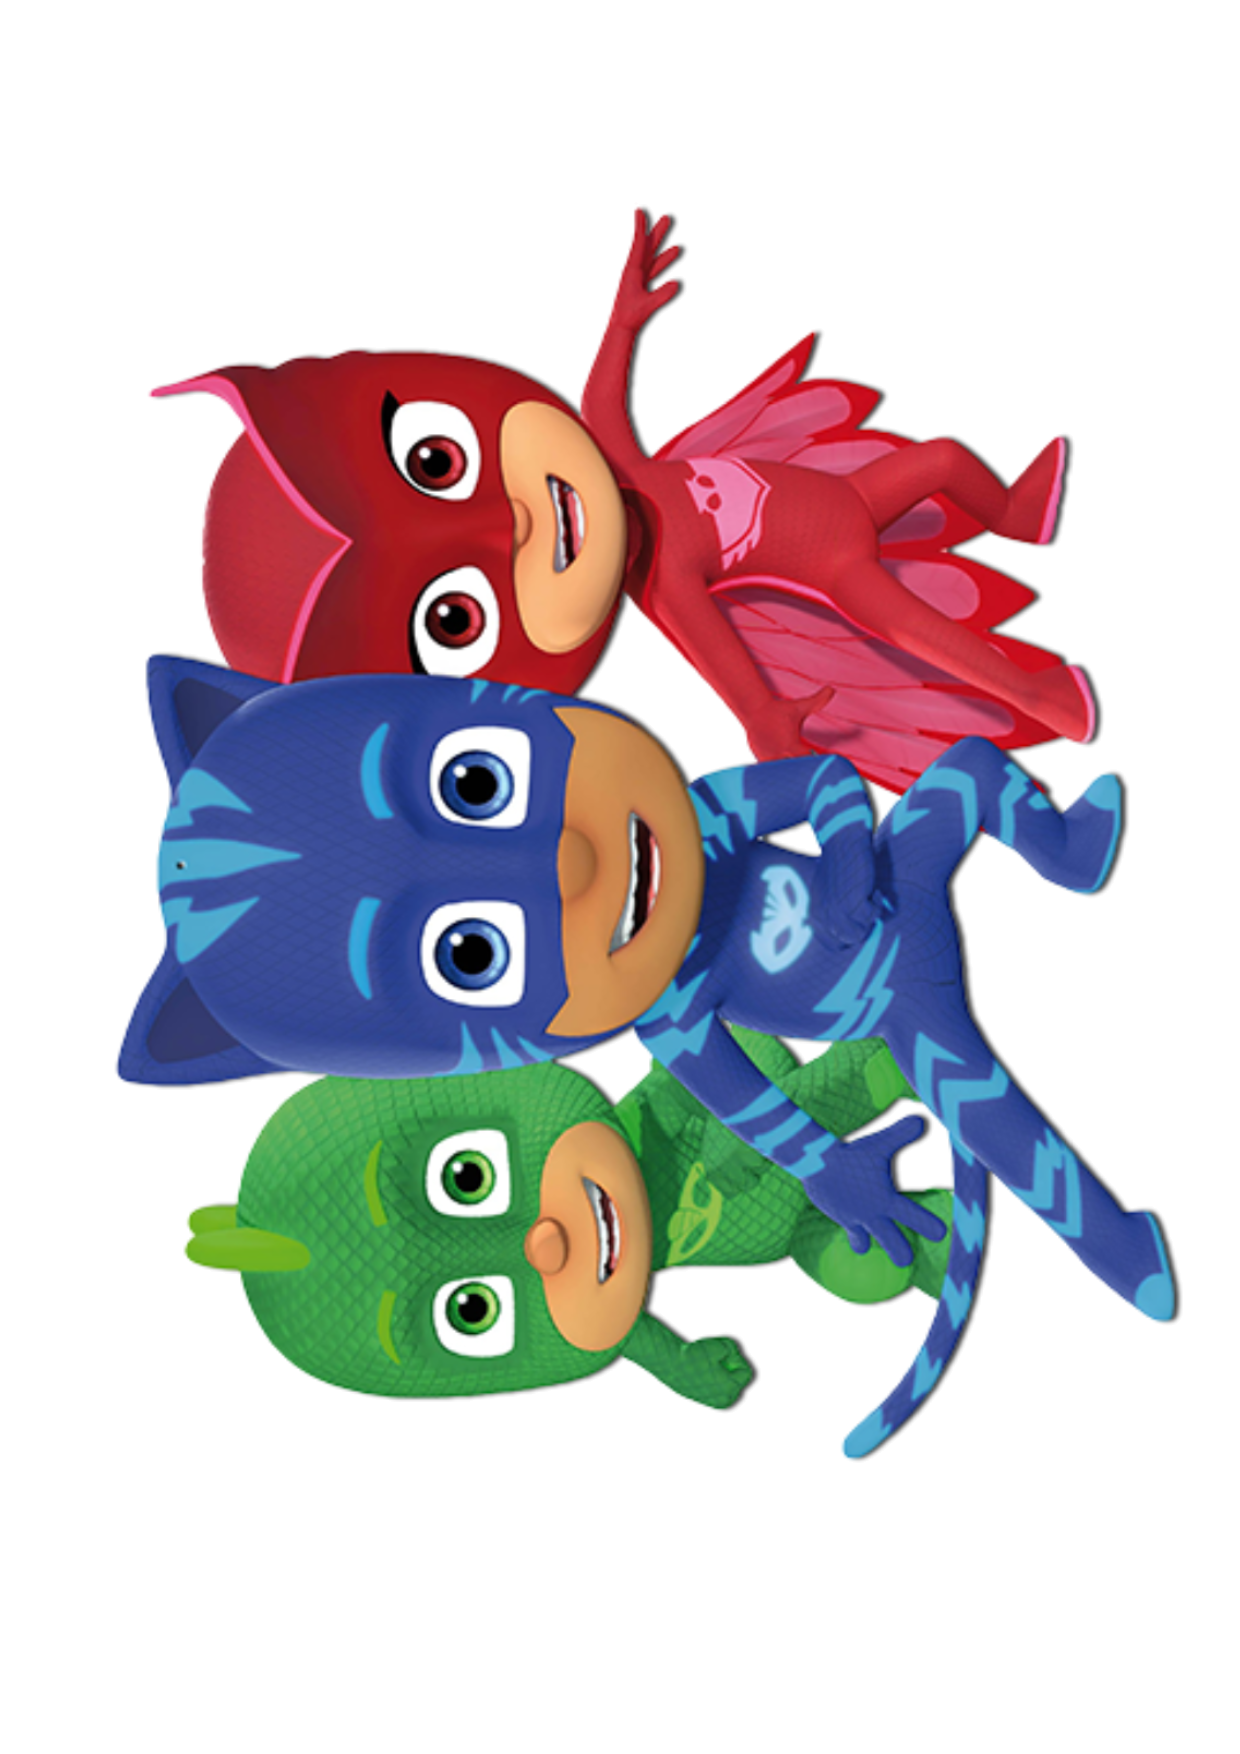 Kit Festa PJ Masks para imprimir - OrigamiAmi - Arte para toda a festa